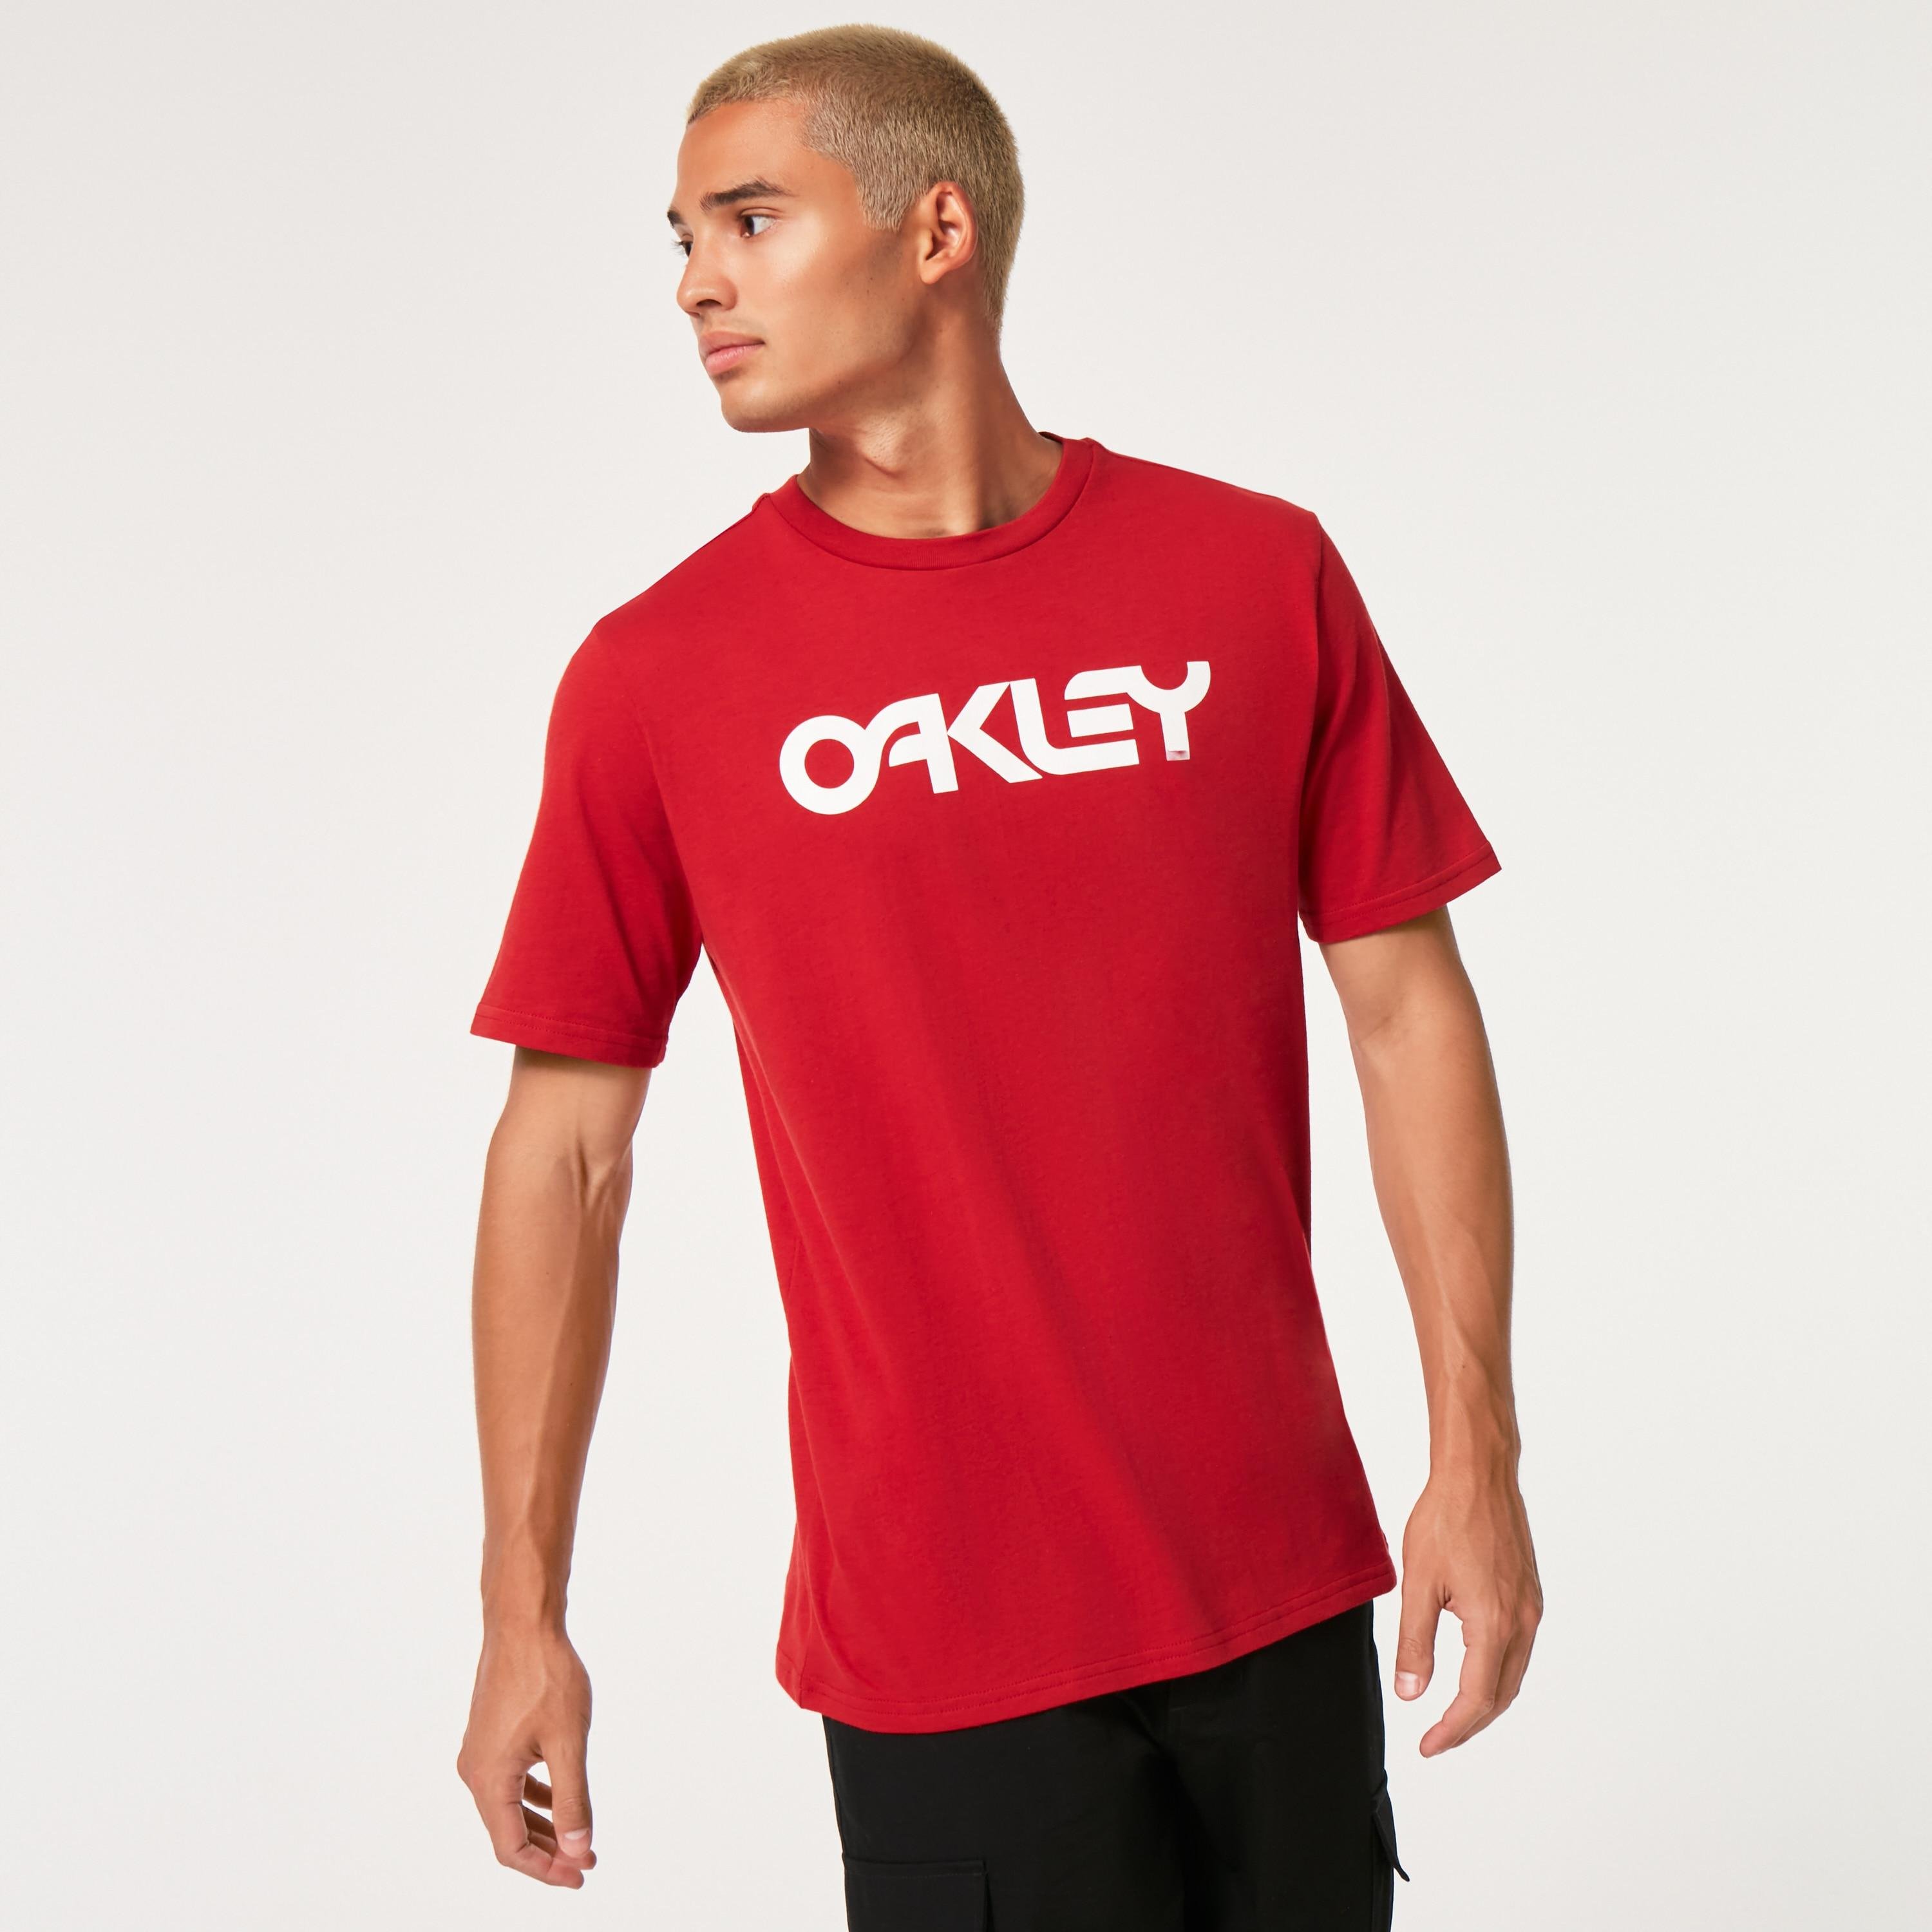 Oakley Men's Mark Ii Tee 2.0 by OAKLEY